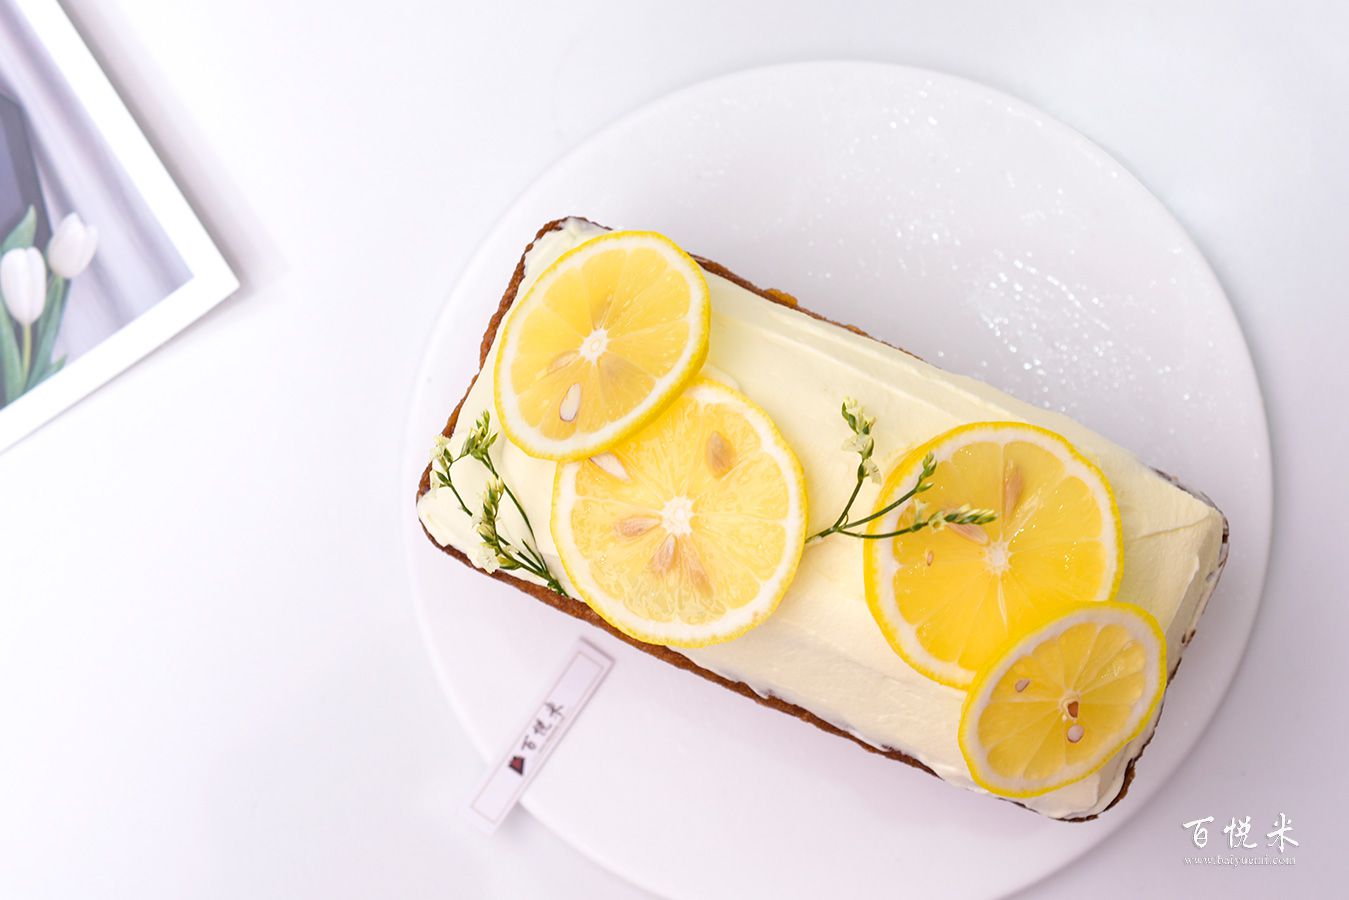 清蒸柠檬蛋糕 Steamed Lemon Cake | Sarah's Simple Lifestyle